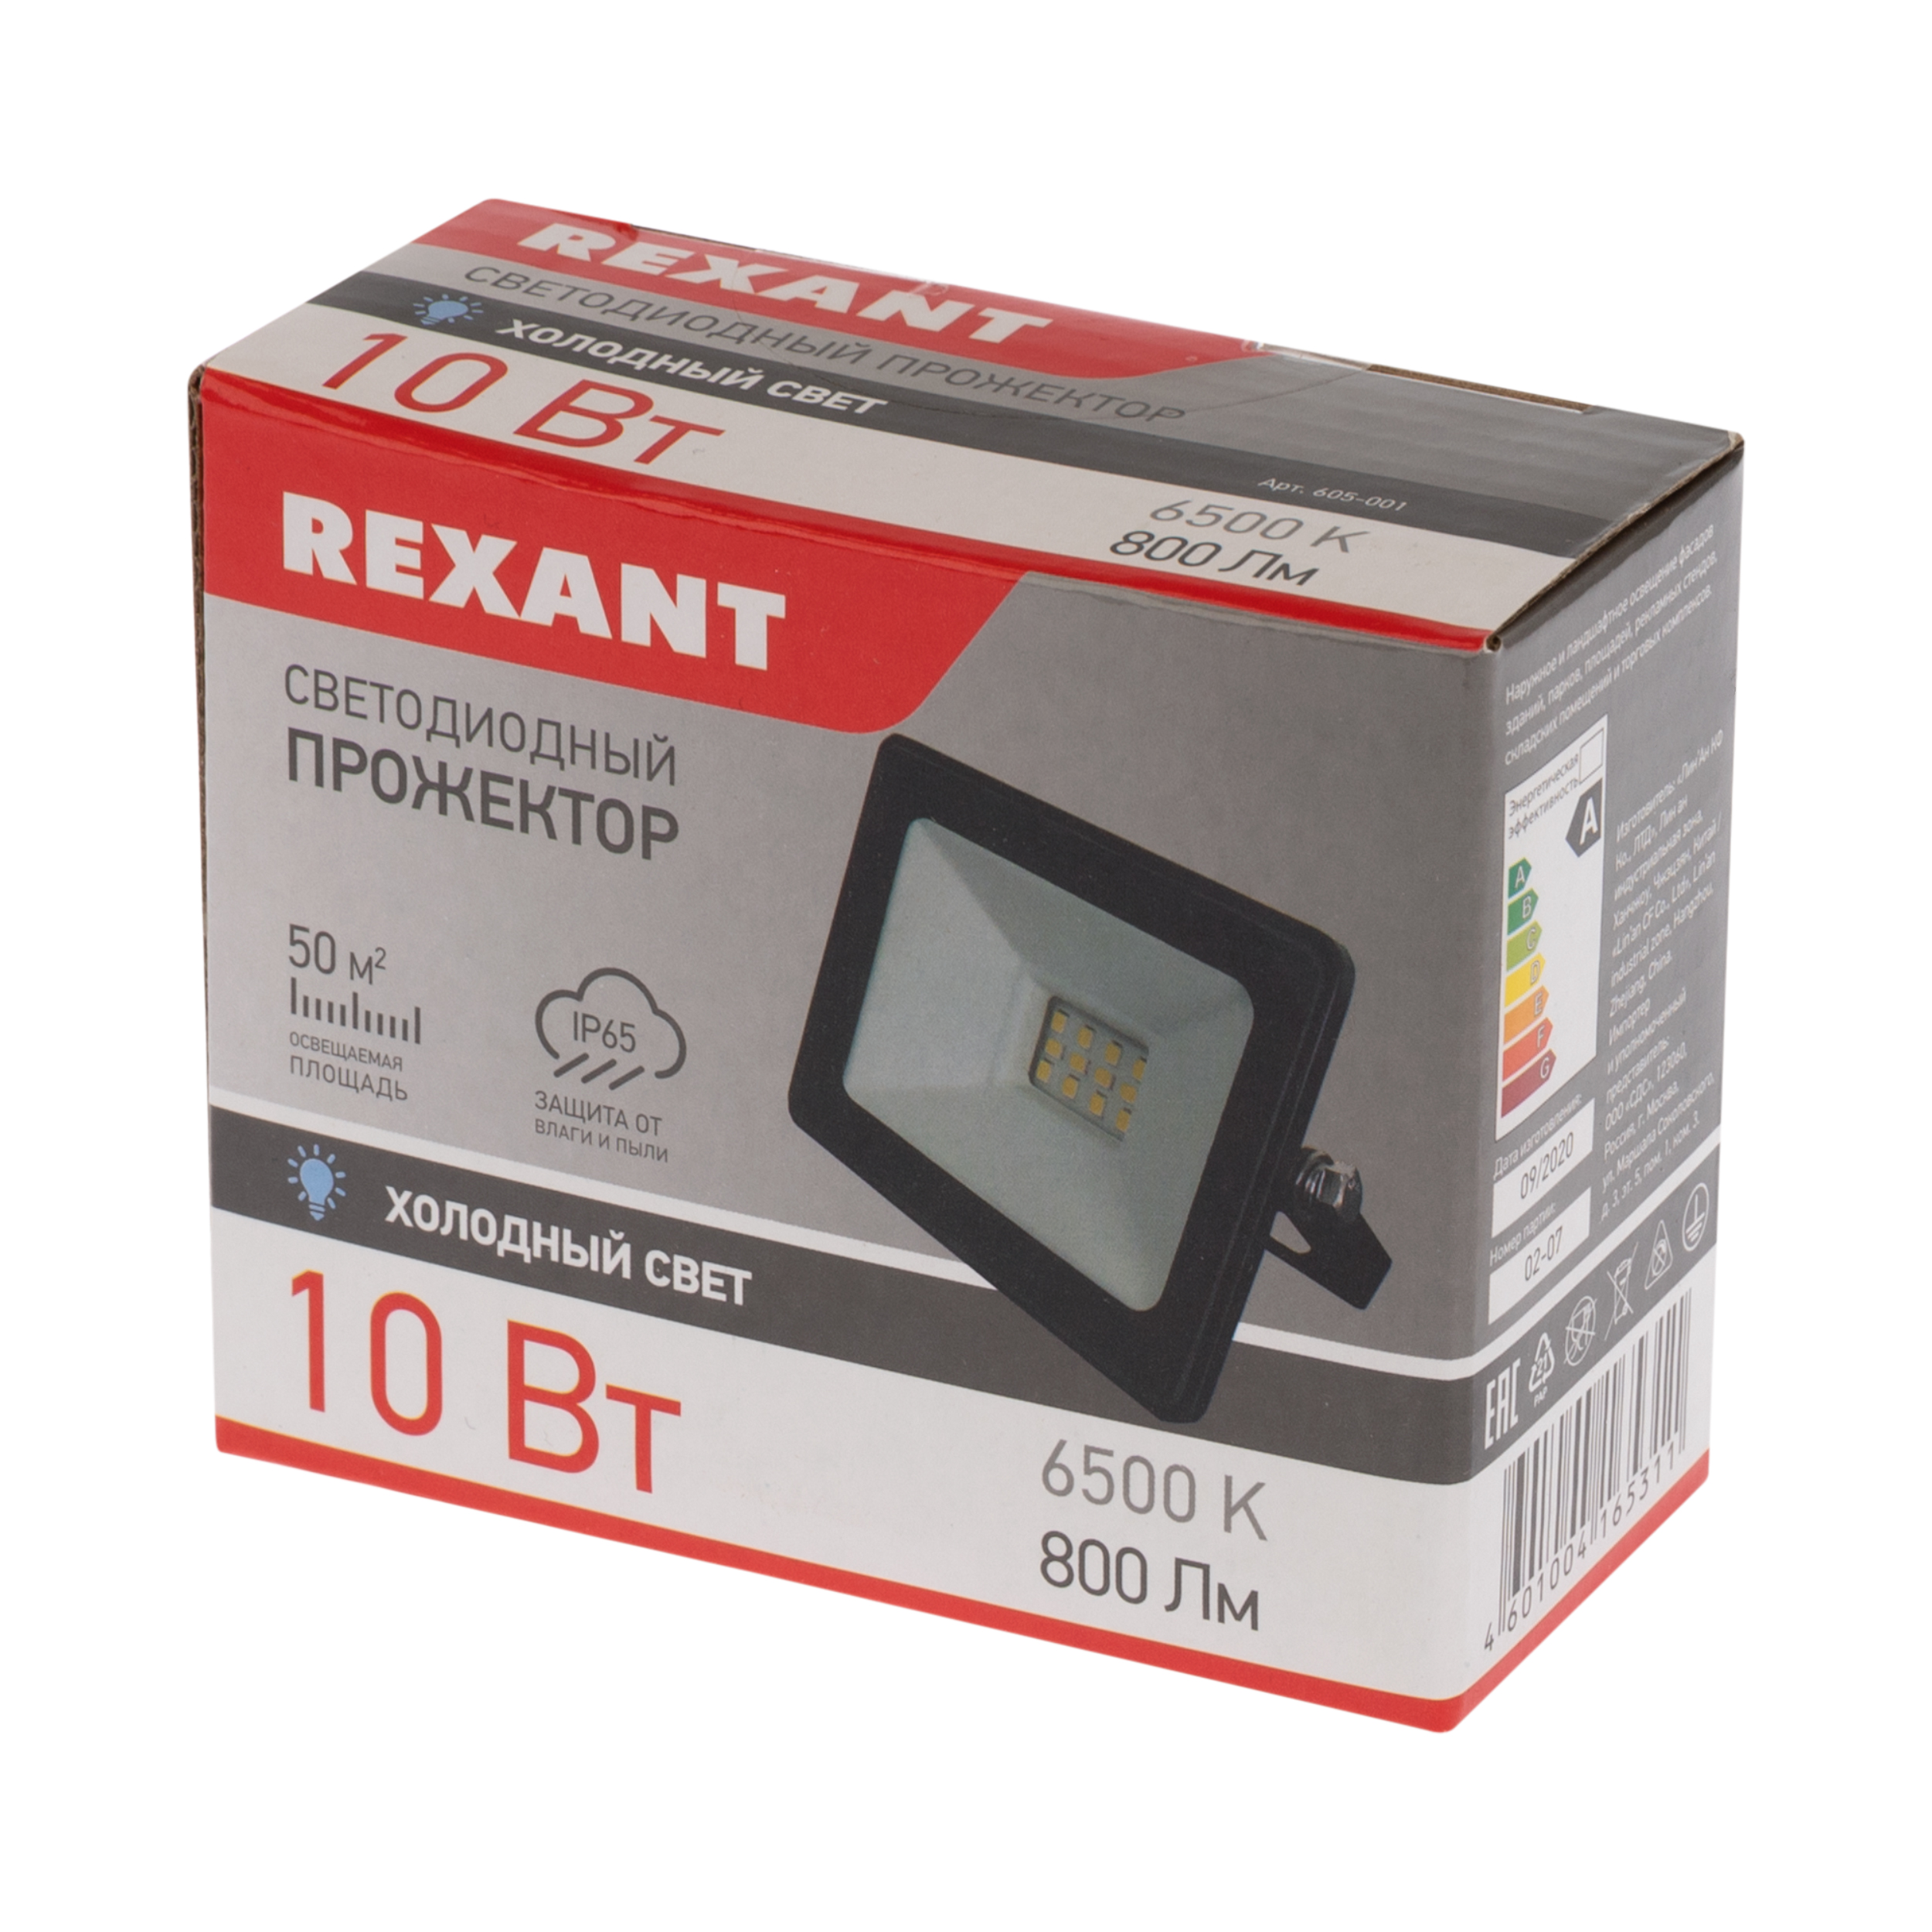 Прожектор REXANT 10 Вт светодиодный 800Лм 6500К холодный свет черный корпус - фото 4